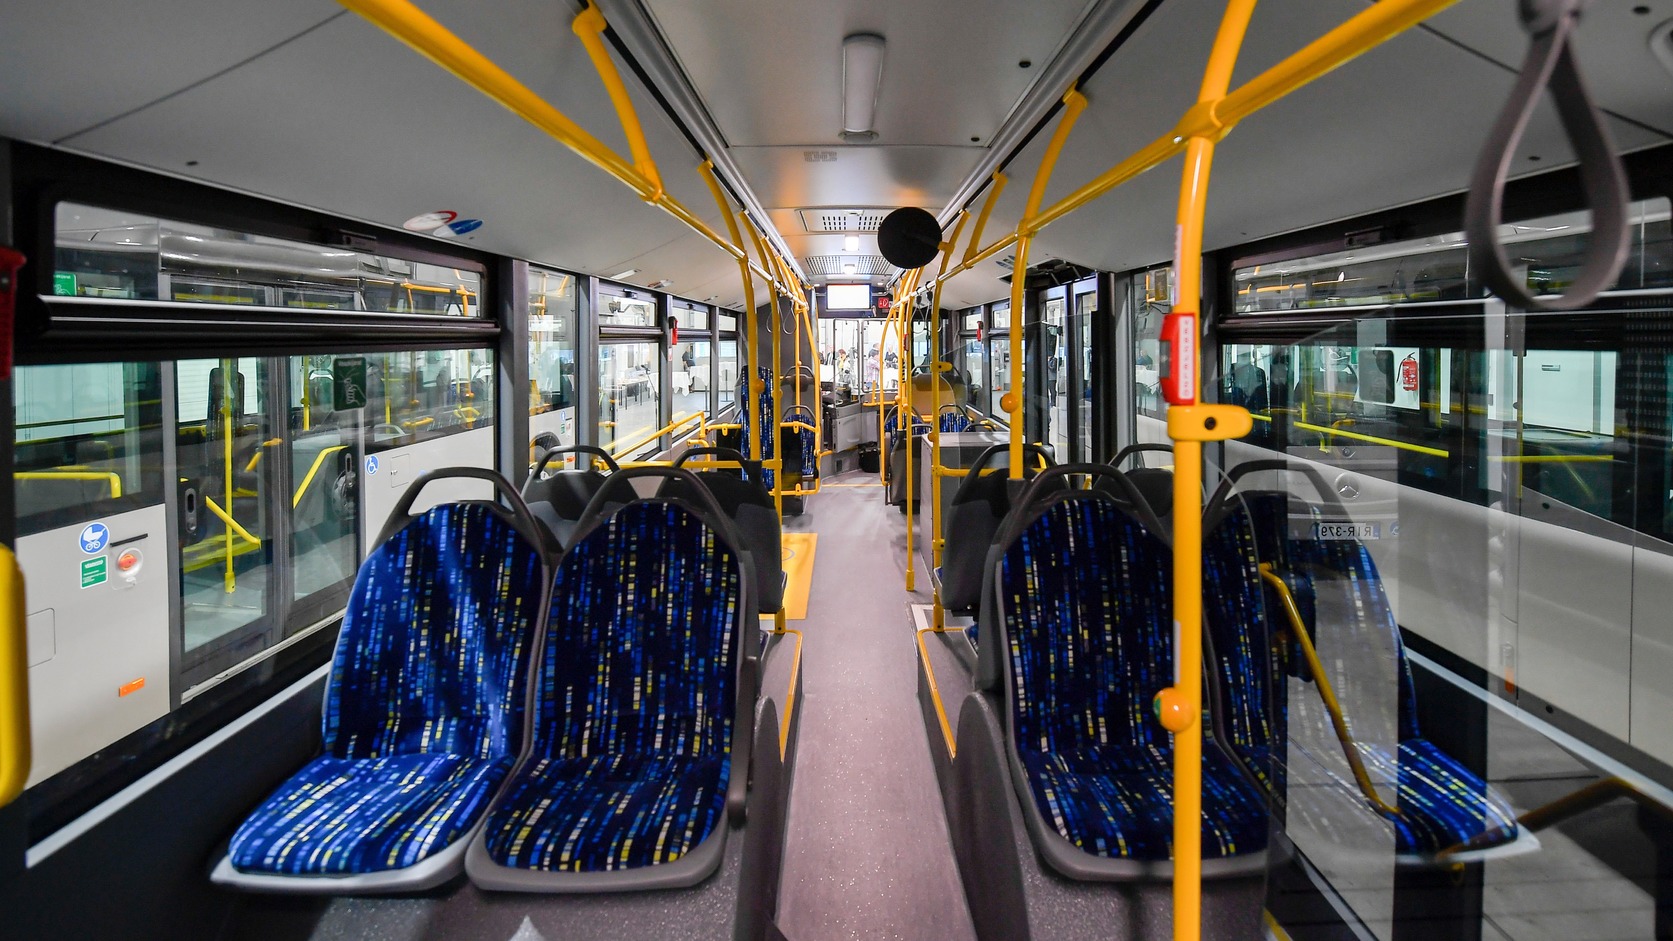 Tizenöt új autóbusz beszerzésével kezdődik Székesfehérvár közösségi közlekedési stratégiájának végrehajtása